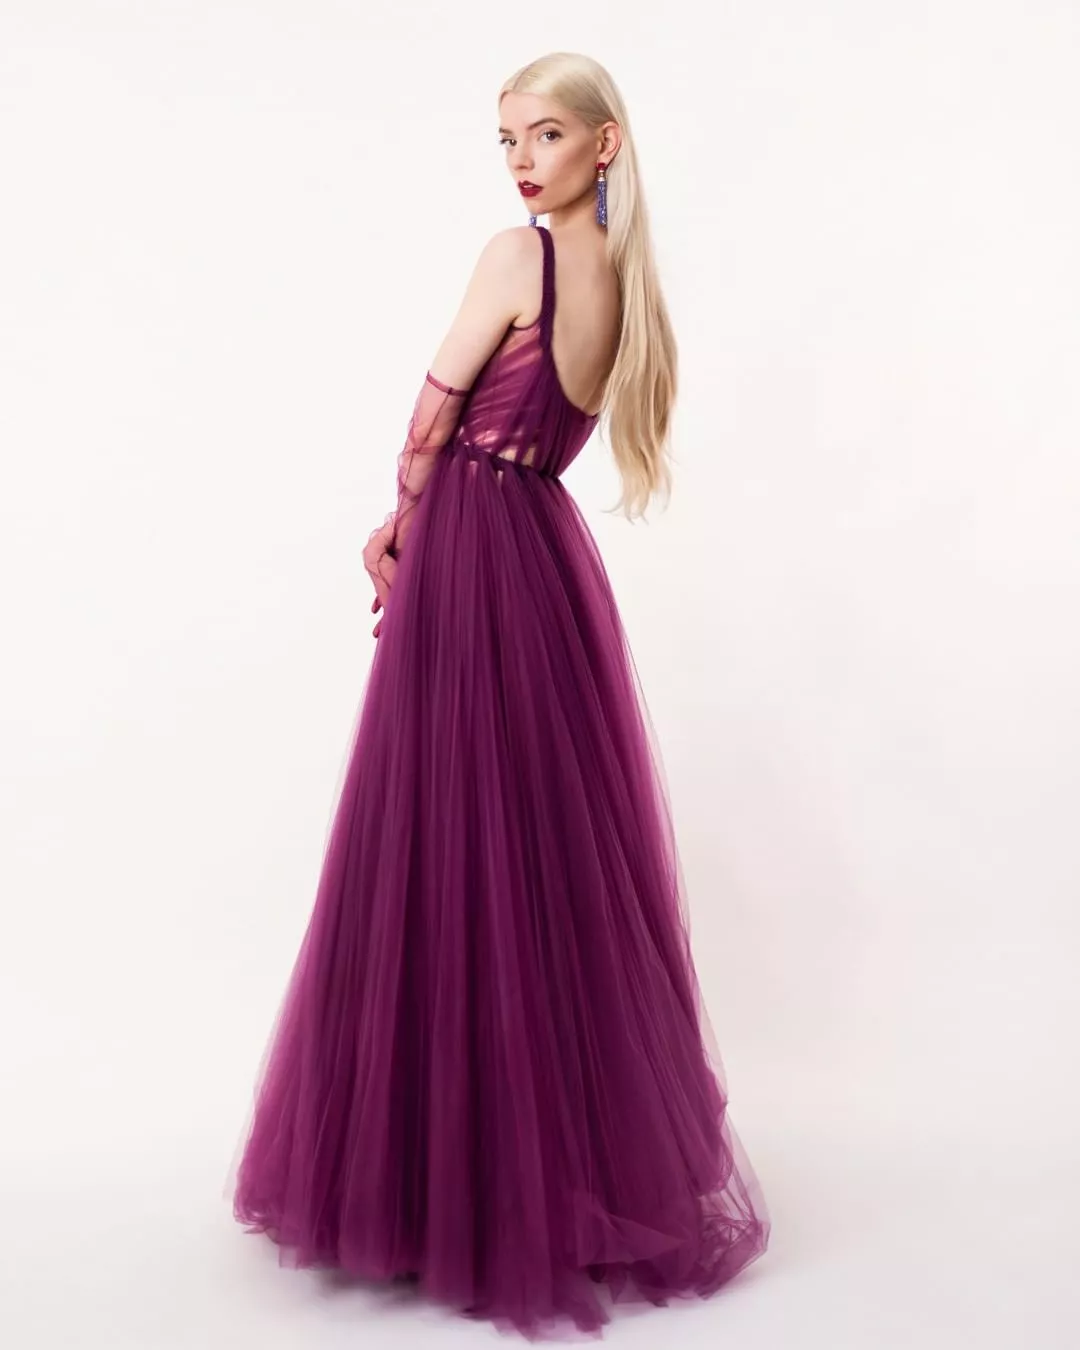 Аня Тейлор-Джой в платье из кутюрной коллекции Dior весна-лето 2020